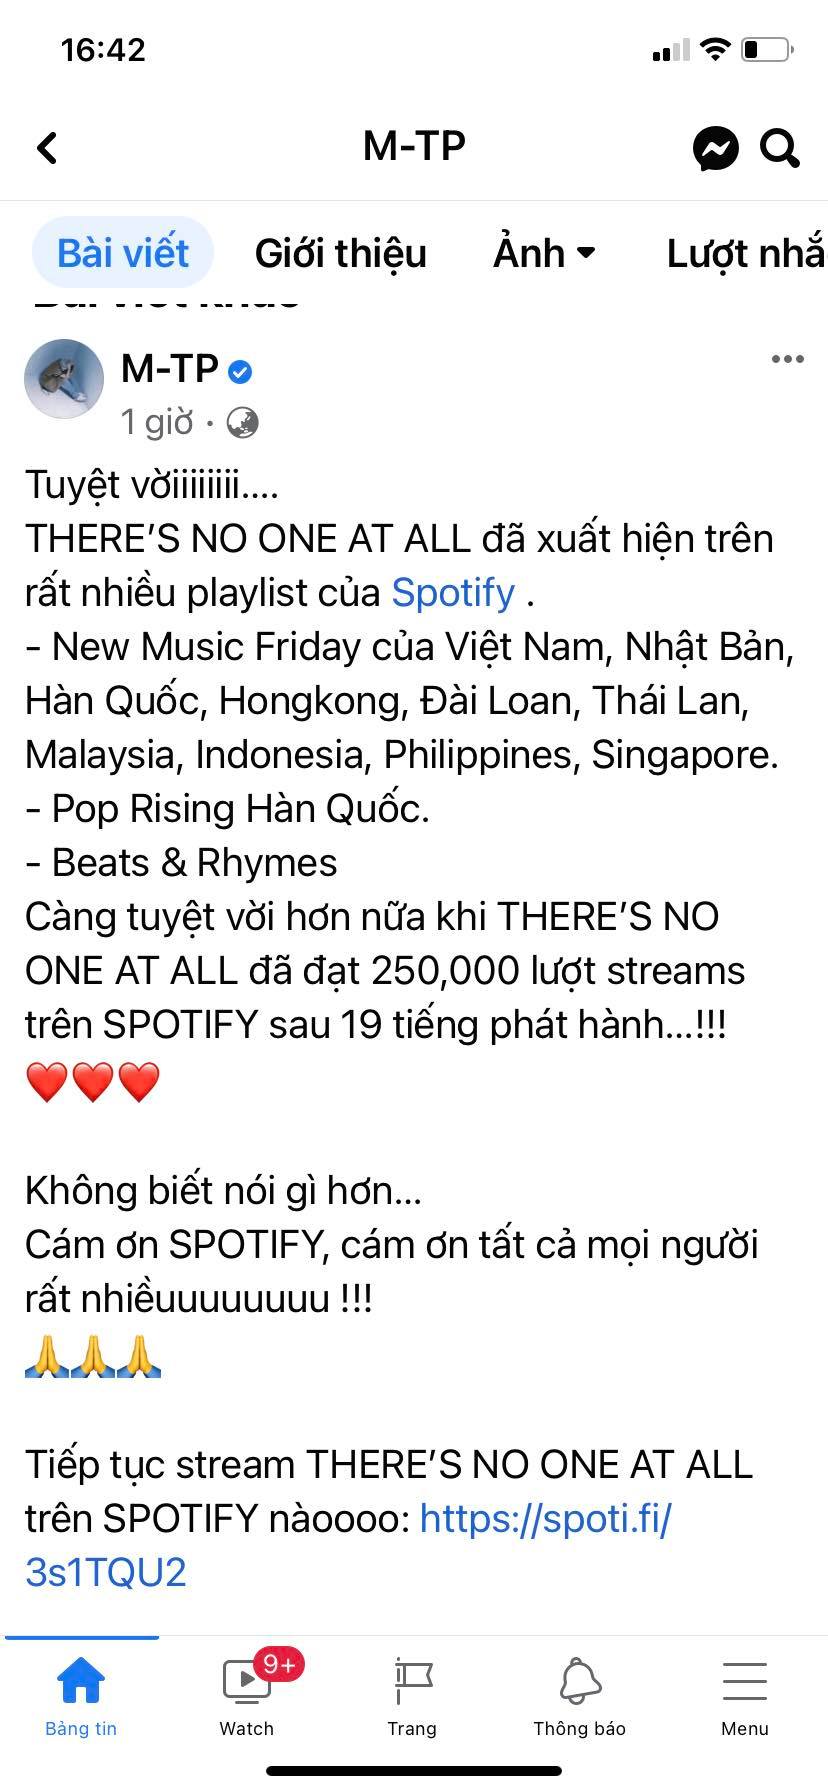 Trên fanpage 14 triệu lượt thích, Sơn Tùng M-TP vui mừng, nói “tuyệt vời” vì ca khúc của anh được phát hành nền tảng Spotify tại nhiều quốc gia.